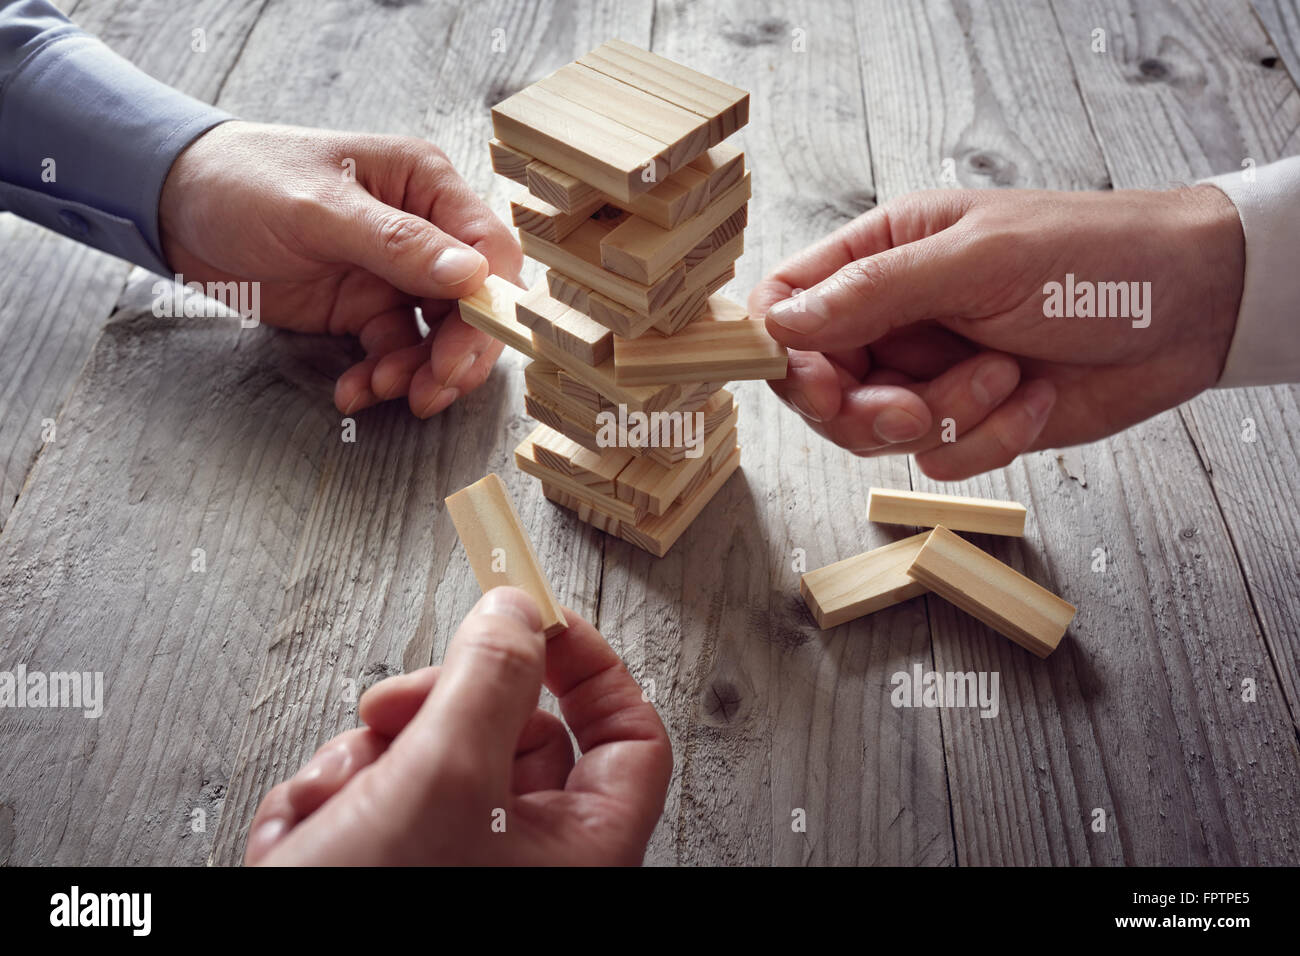 Planung, Risiko und Team-Strategie in der Wirtschaft, Geschäftsmann, Glücksspiel, hölzernen Block auf einem Turm platzieren Stockfoto